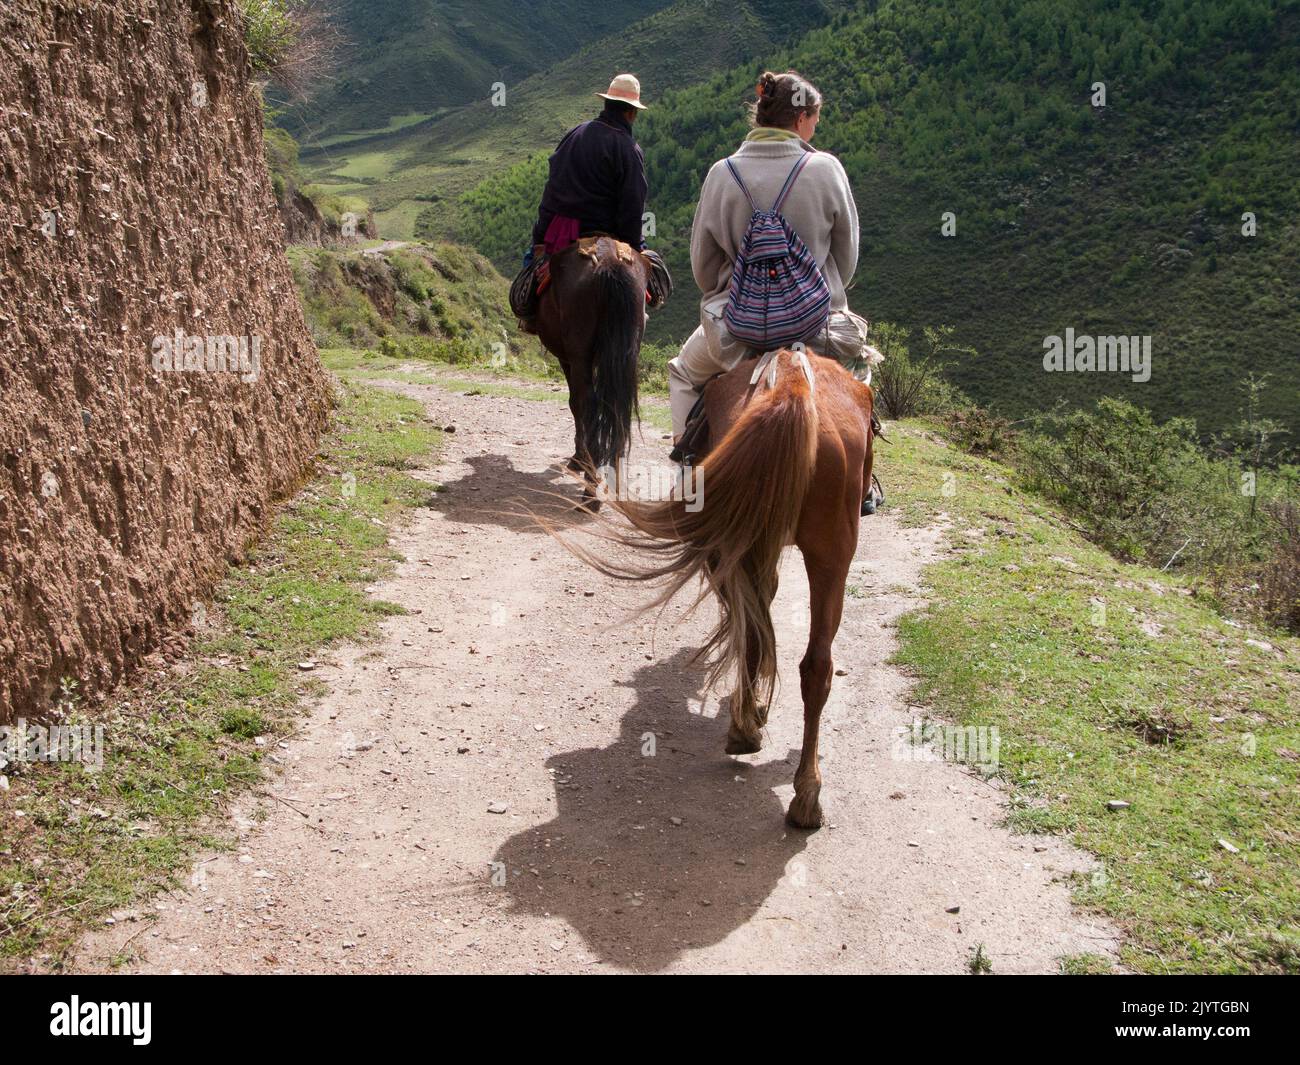 Escursione a cavallo su un pony per turisti occidentali ed europei, turisti e visitatori dati da cavaliere tibetano / uomo / etnie del Tibet, residenti o locali all'antica città cinese murata di Songpan, nella provincia settentrionale del Sichuan, Cina. (126) Foto Stock